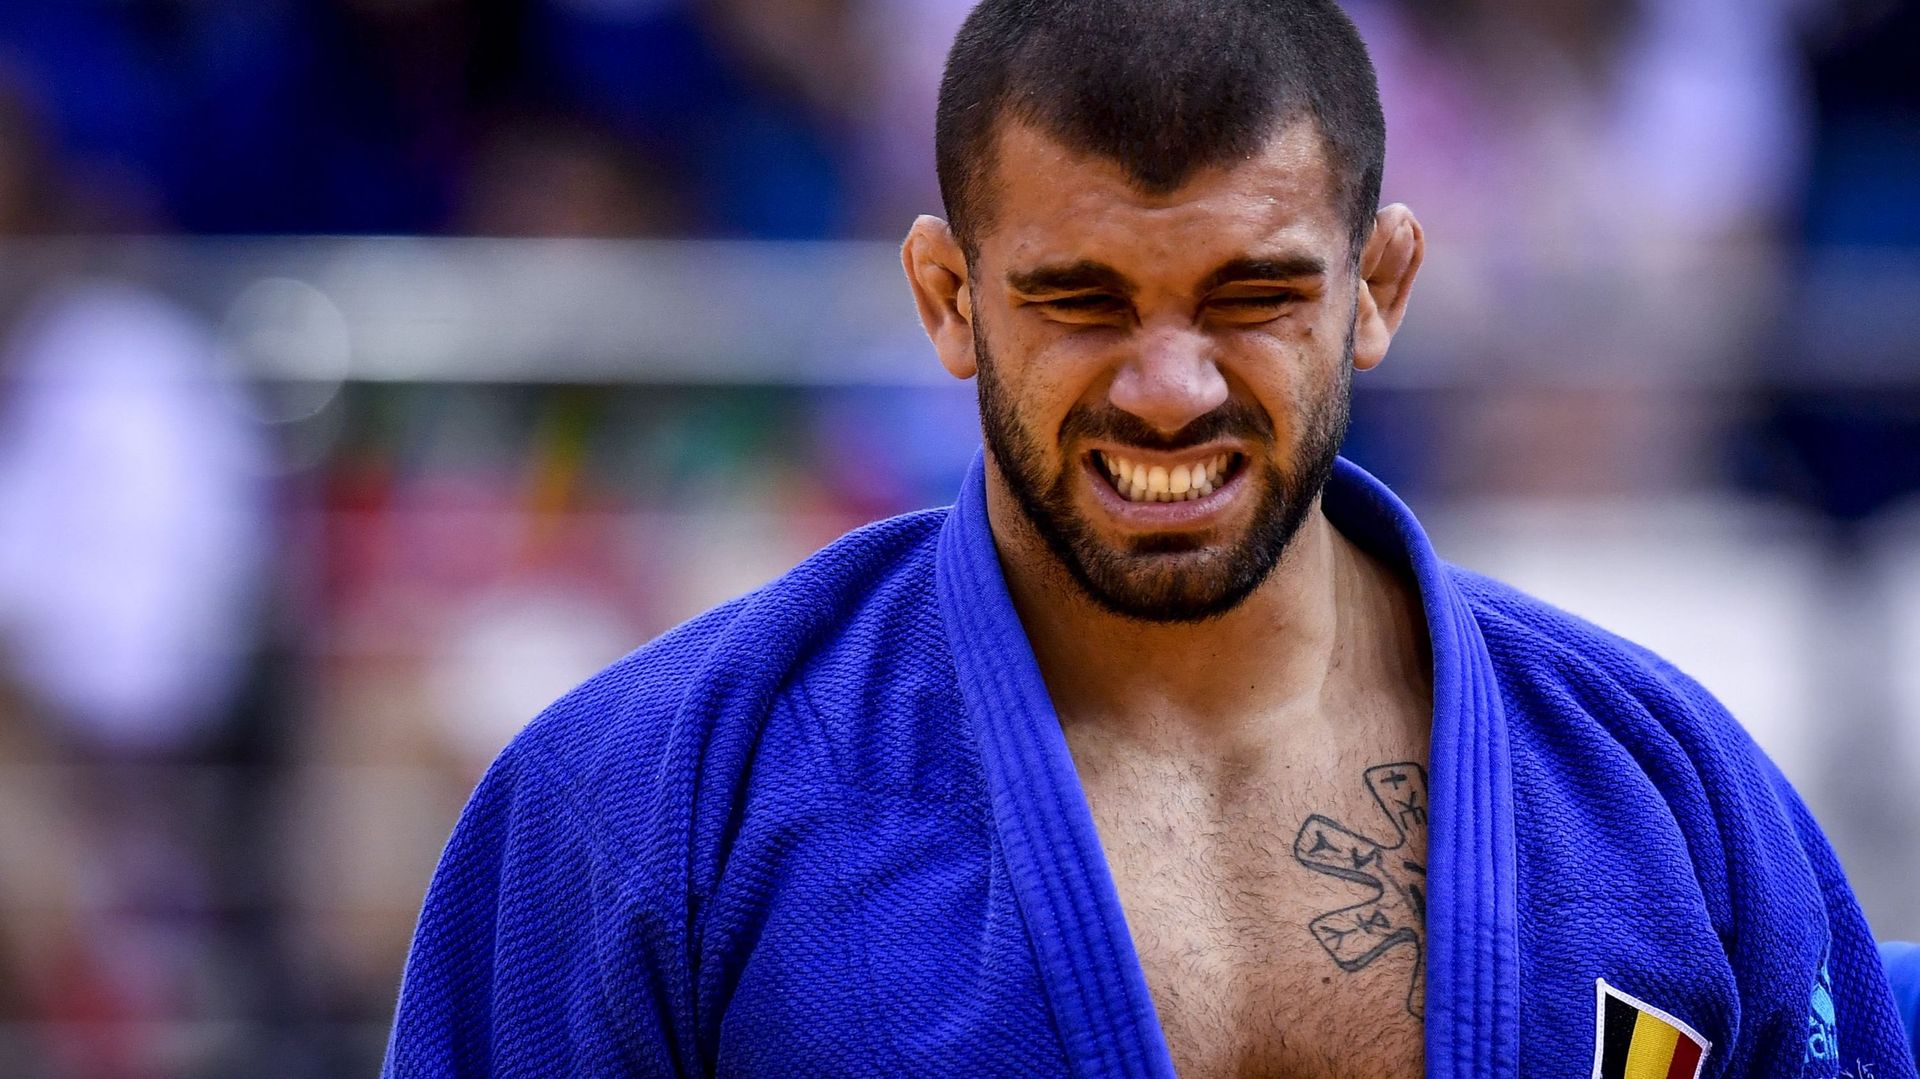 Le Grand Prix de judo de Rabat annulé à cause du Coronavirus, la tuile pour Nikiforov